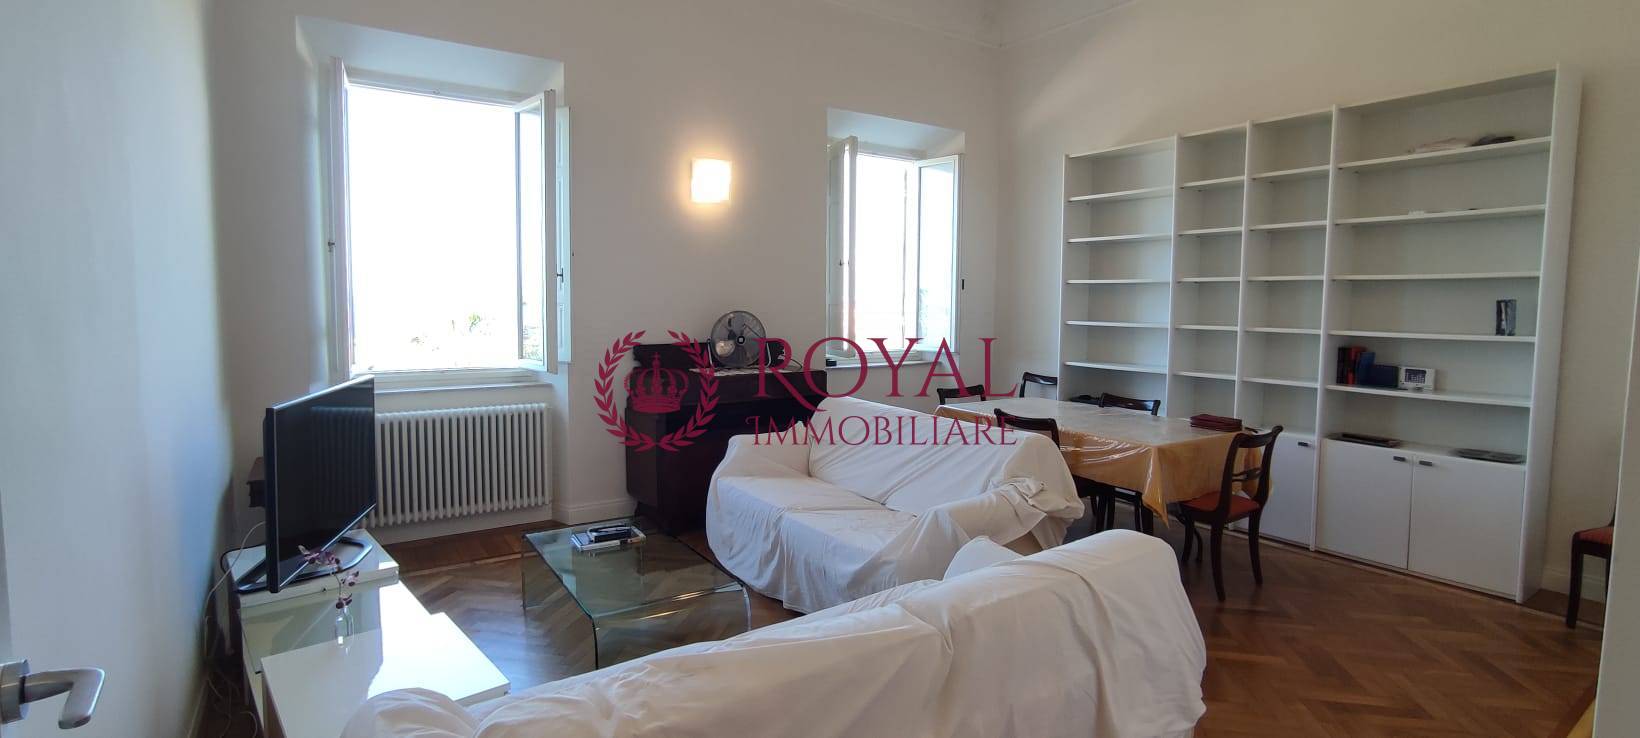 Appartamento in affitto a Livorno, 3 locali, zona omare, prezzo € 1.400 | PortaleAgenzieImmobiliari.it